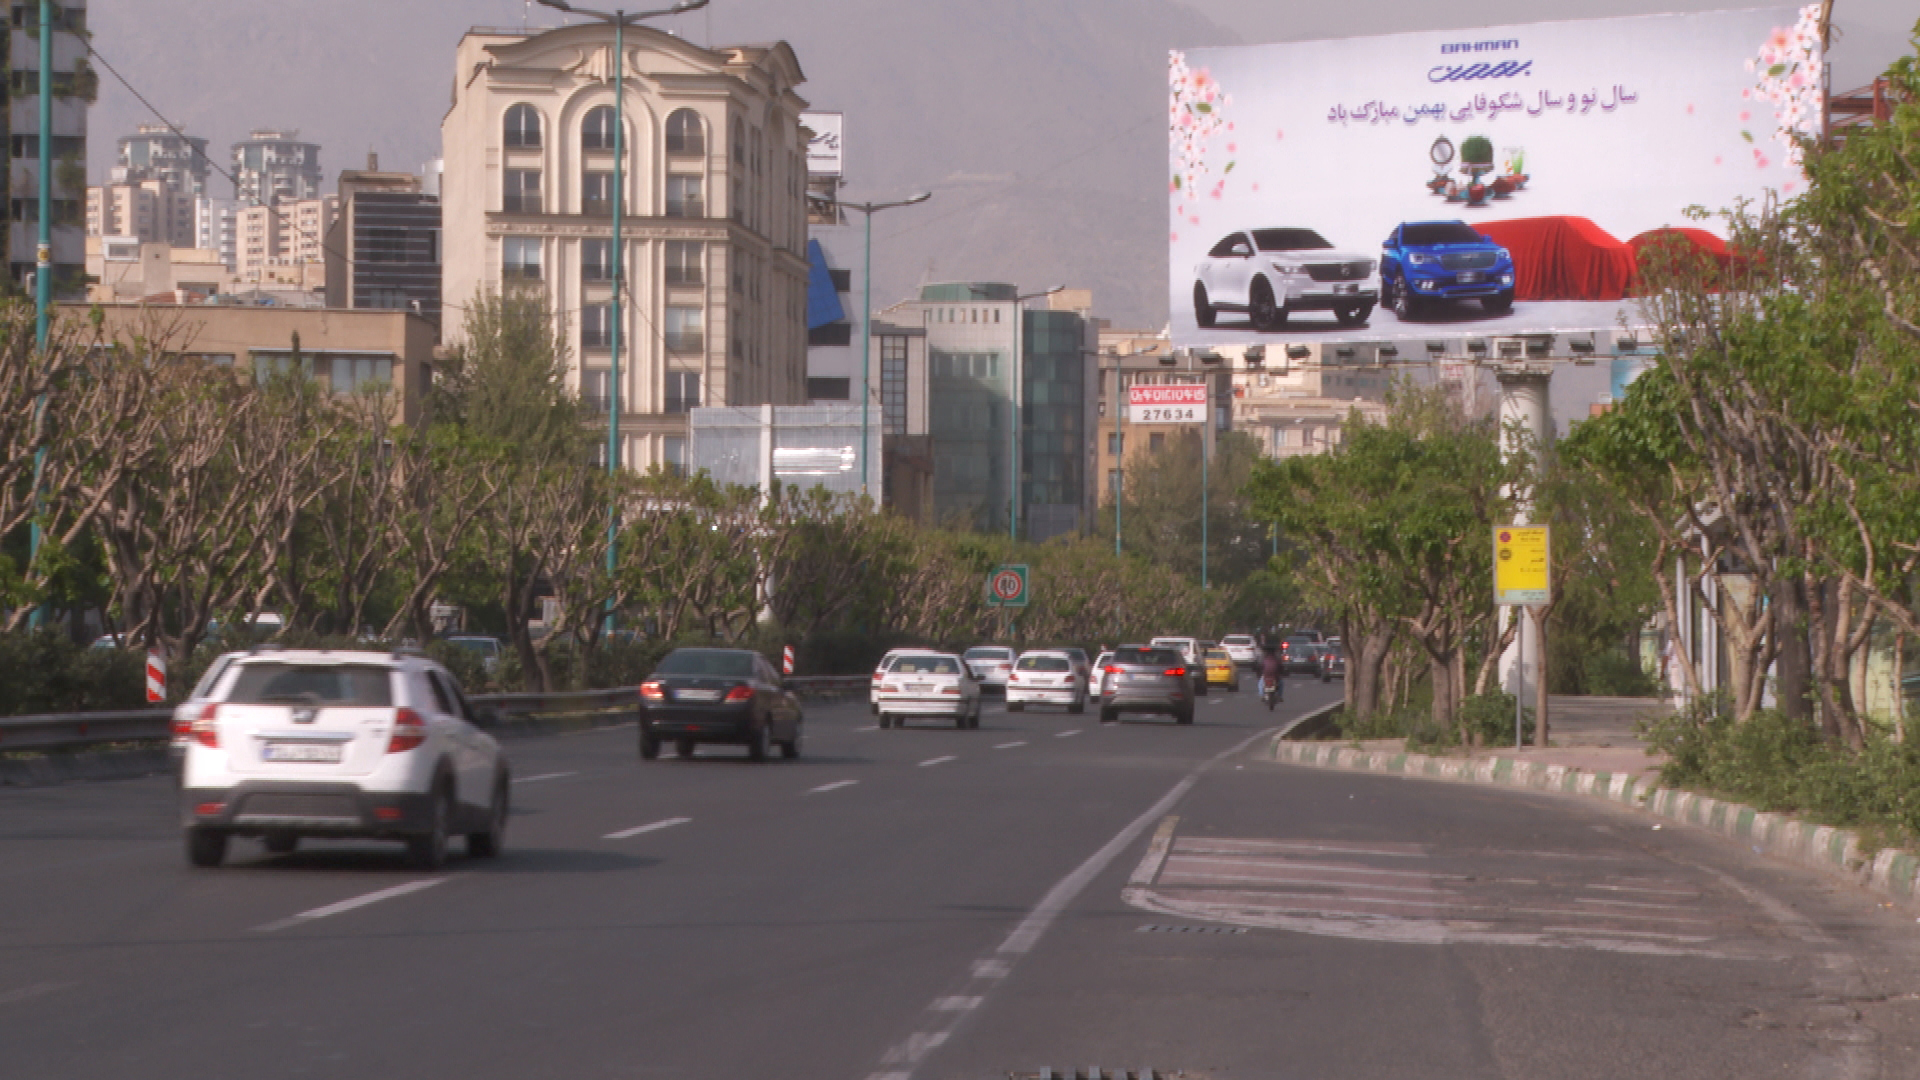 Werbung von chinesischen Autos in Kooperation mit iranischen Herstellern | Katharina Willinger, BR